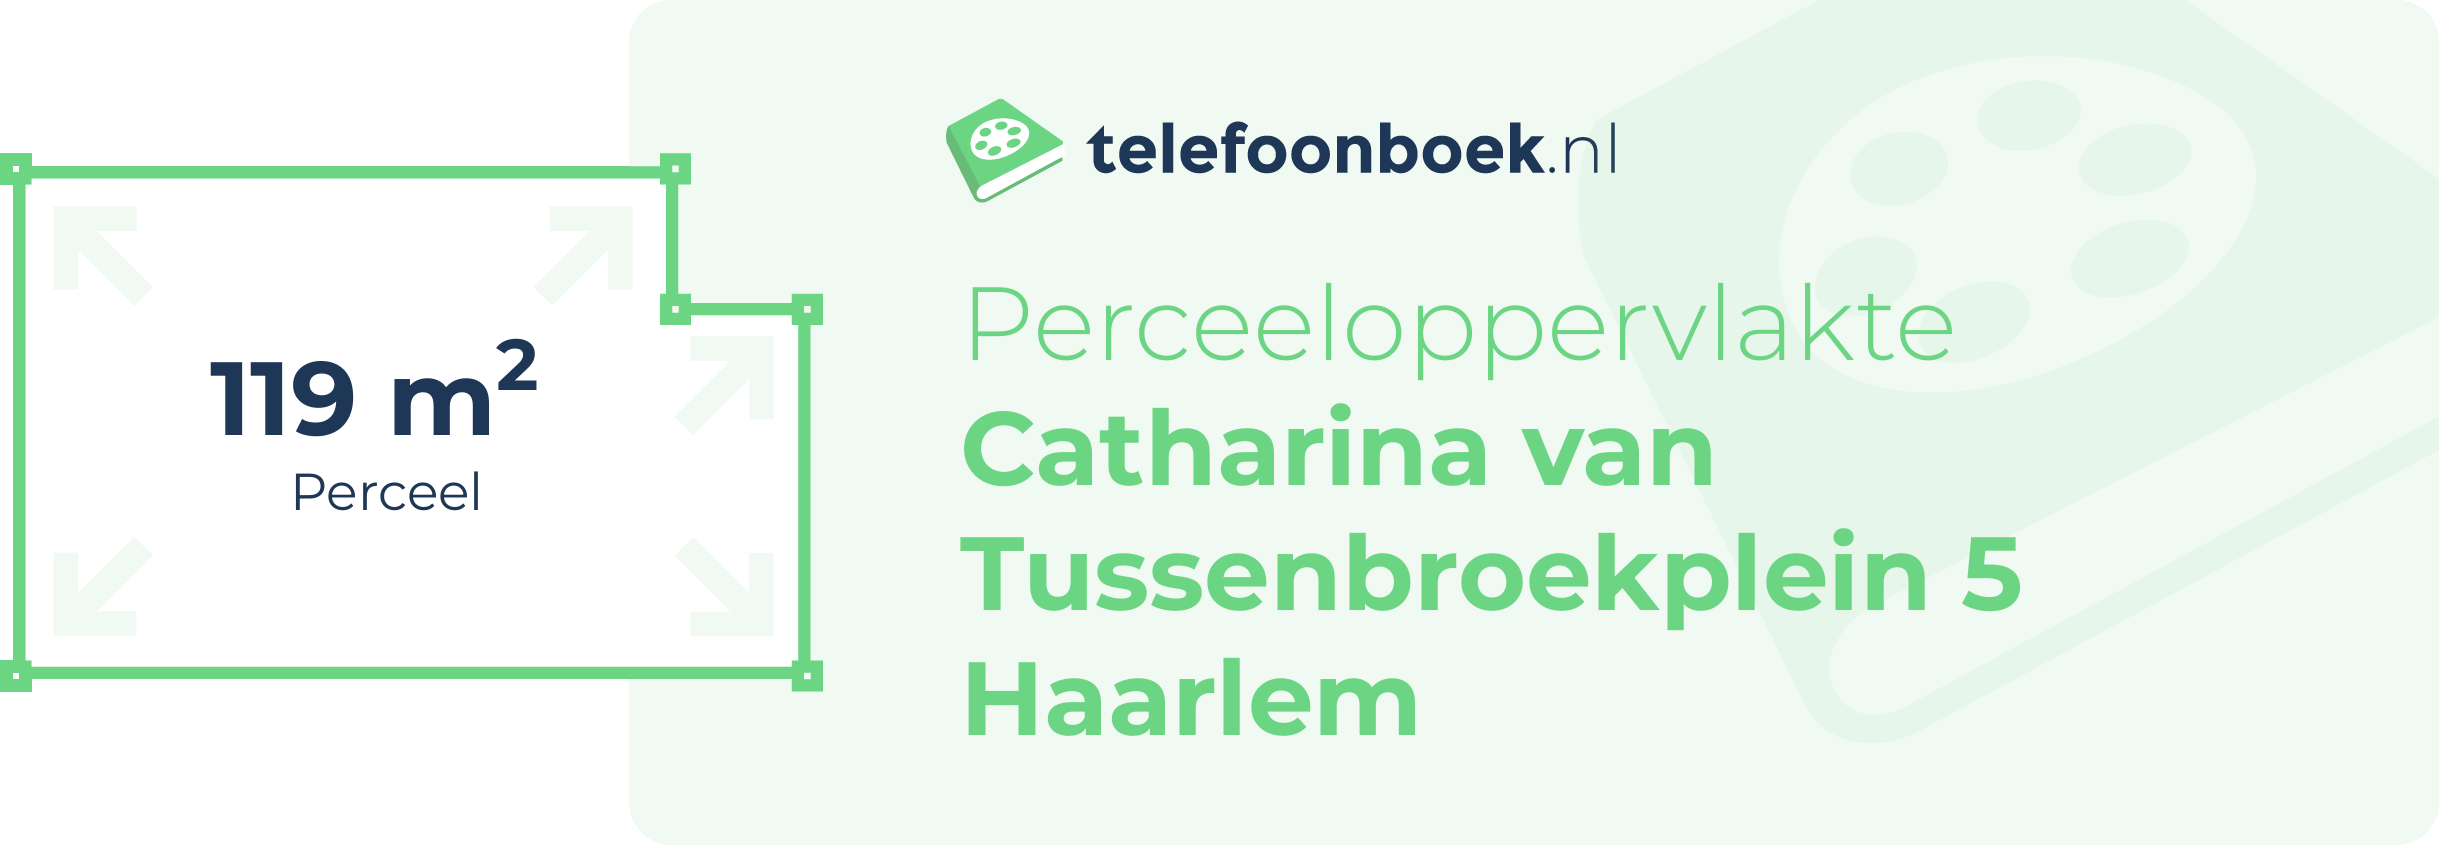 Perceeloppervlakte Catharina Van Tussenbroekplein 5 Haarlem